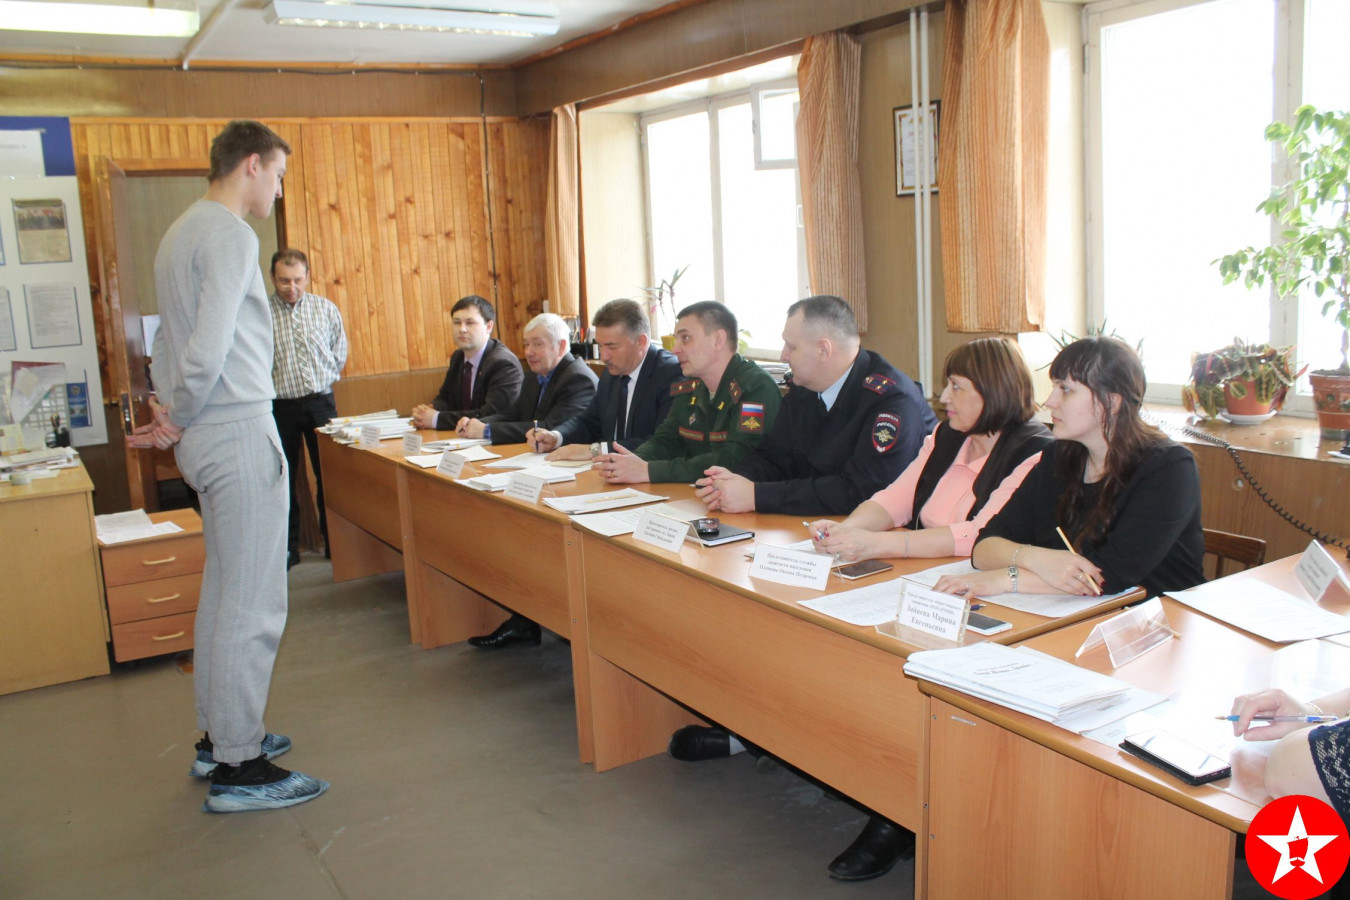 Зачисление в армию челябинца с короткой ногой правозащитник Табалов назвал военно-врачебным «шедевром»